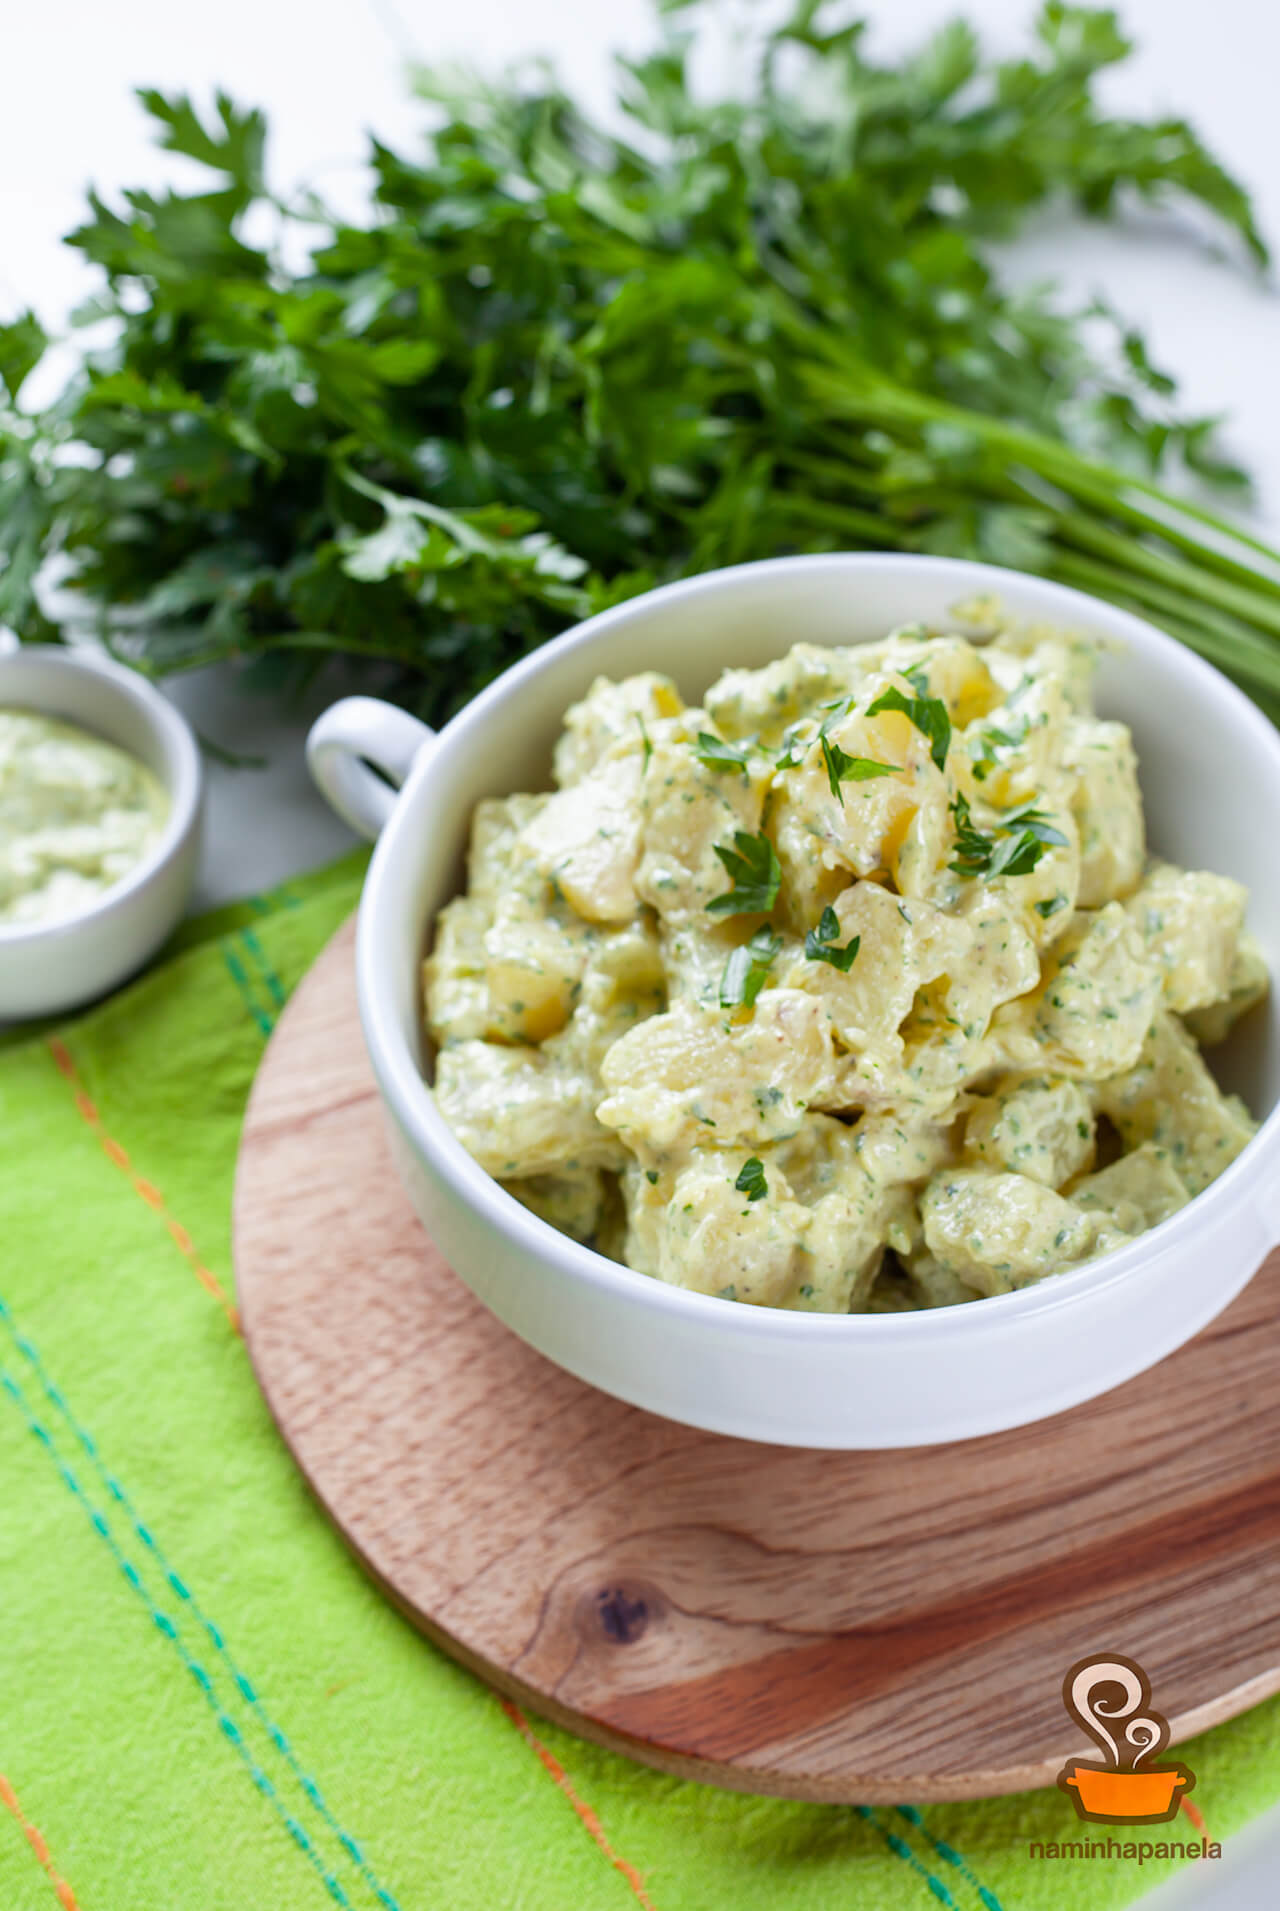 Salada de batata com maionese verde - naminhapanela.com